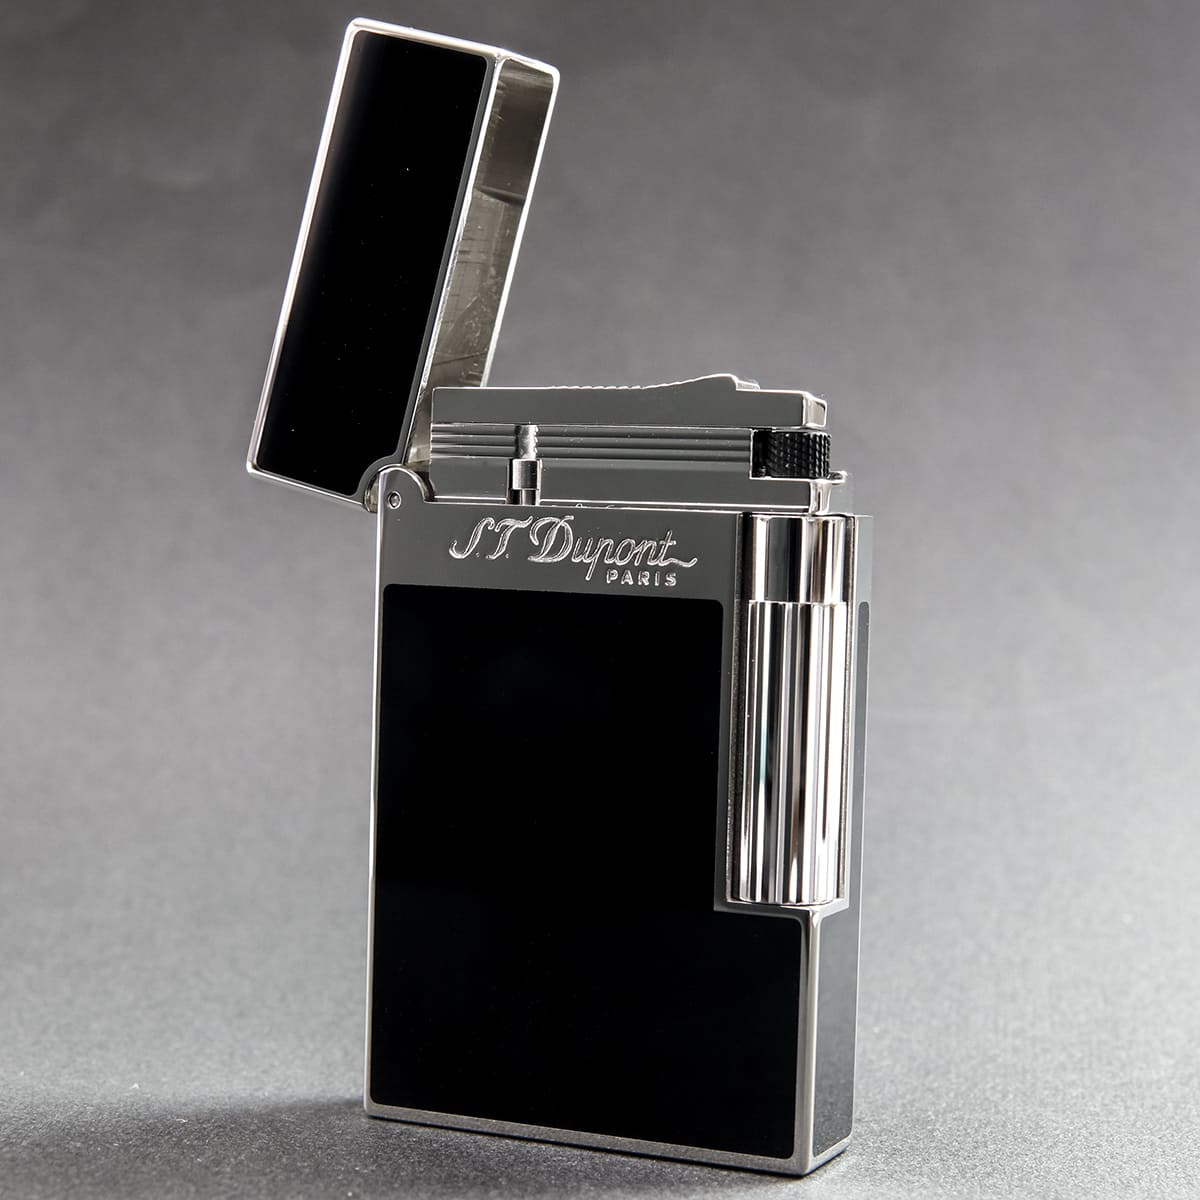 エス・テ・デュポン エス・ティー・デュポン S.T.Dupont ガスライター ライター 喫煙具 ライン2 モンパルナス ブラック 黒 シルバー 16296 パラディウム 高級 メンズ 正規品 通販 ブランド 新…